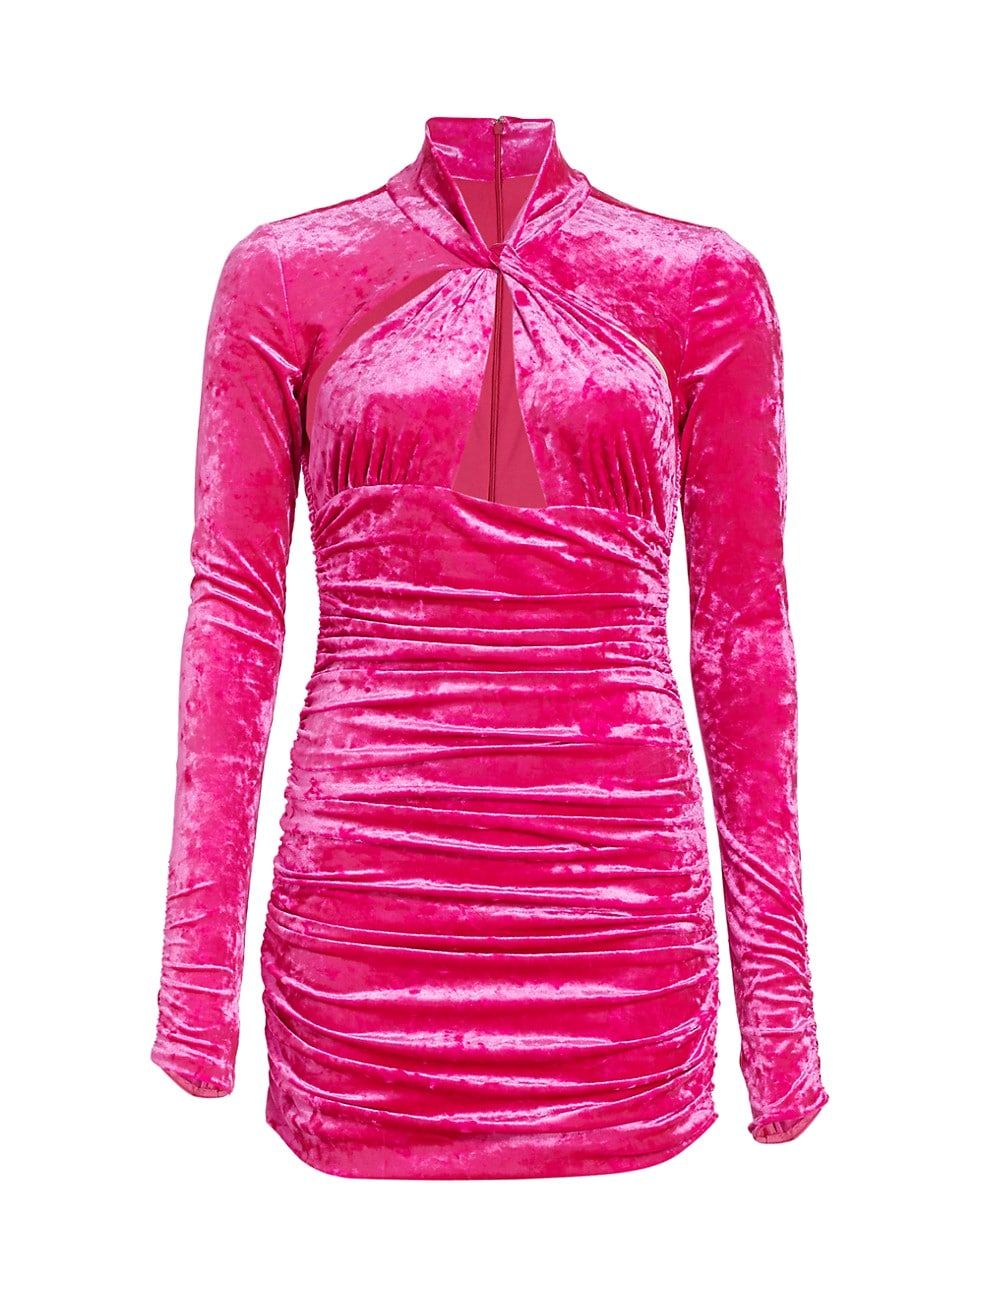 Ronny Kobo Arsenia Crushed Velvet Twisted Minidress | Saks Fifth Avenue